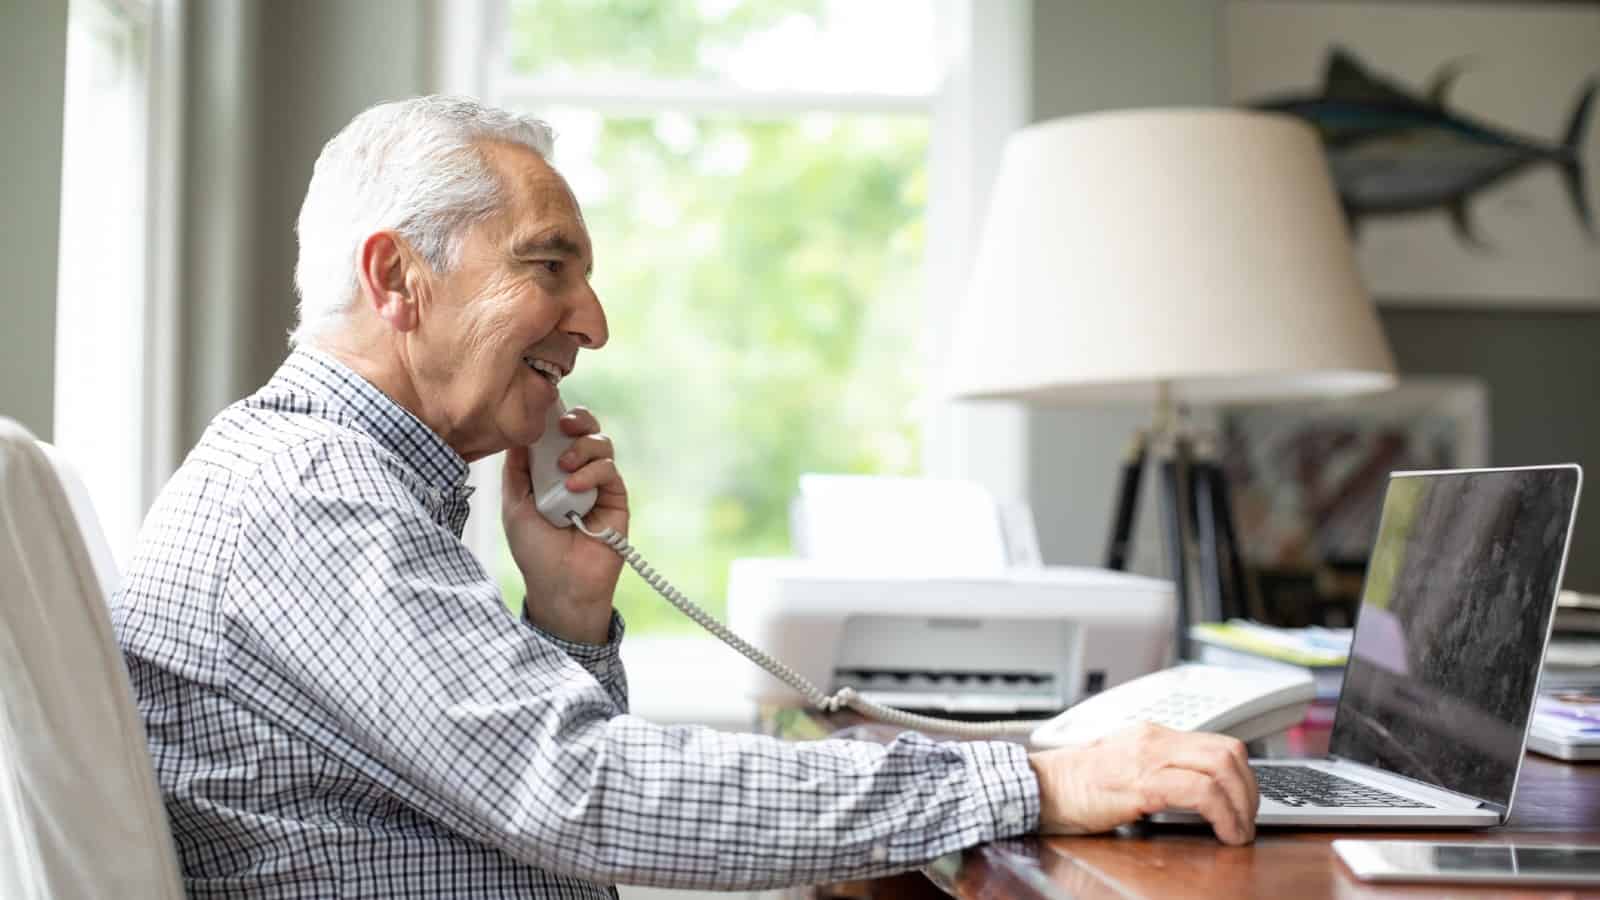 Smiling senior white man talking through telephone while using laptop at desk.